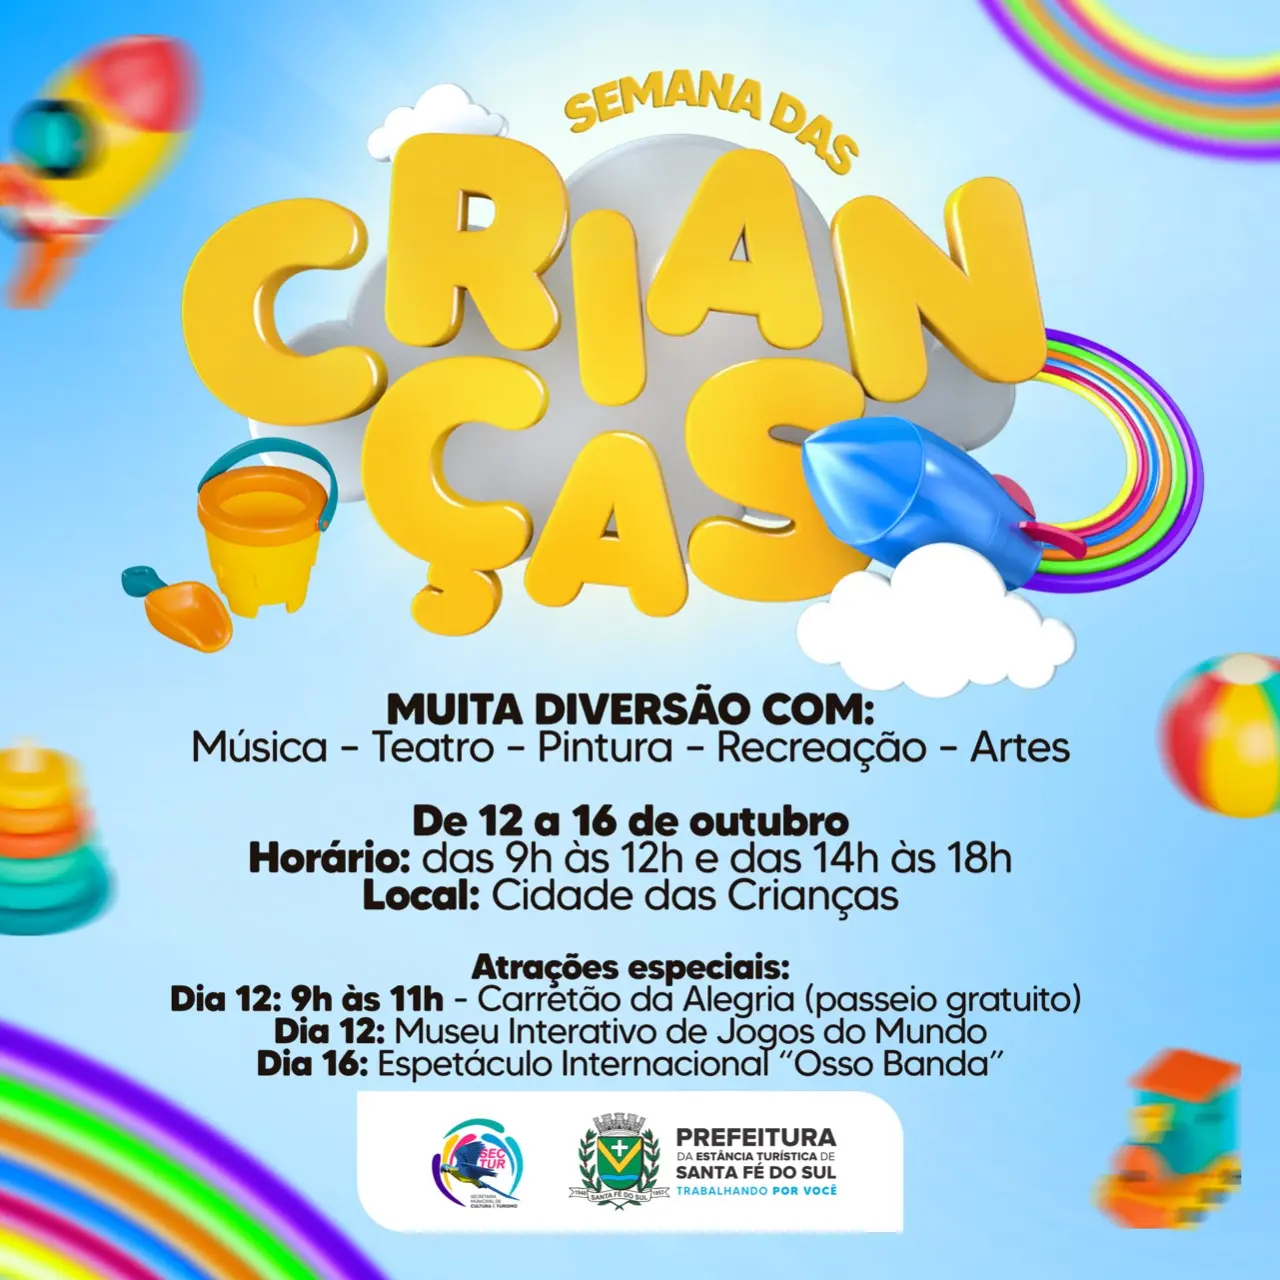 Prefeitura de Santa Fé do Sul promoverá Semana das Crianças com programação especial